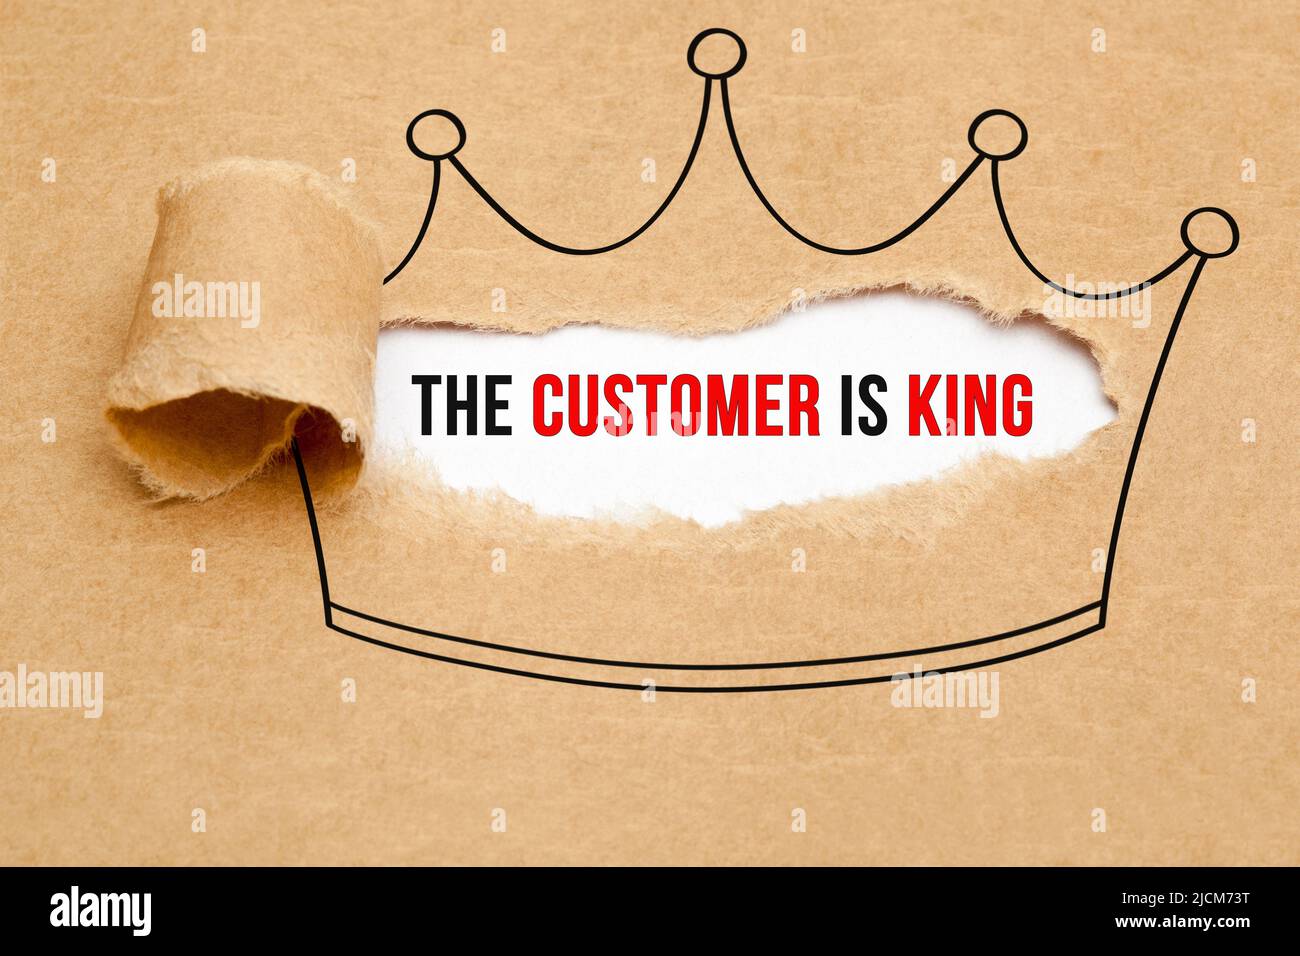 Slogan le client est roi apparaissant derrière du papier brun déchiré. Concept commercial de satisfaction client. Banque D'Images